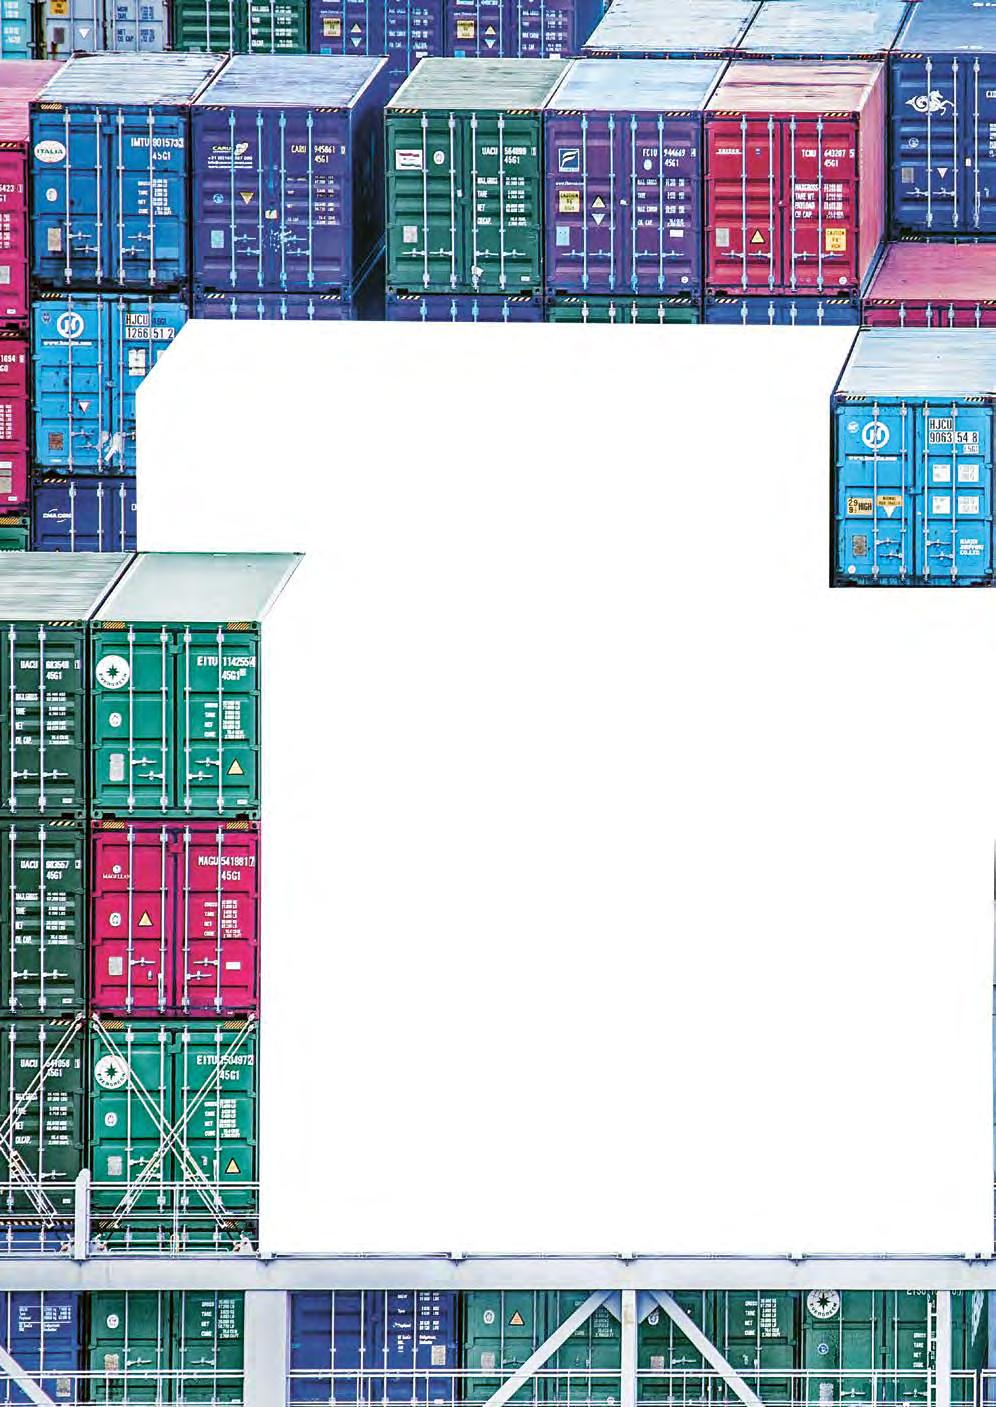 STAPELKUNST Über die drei Hamburger HHLA-Terminals bewegen sich täglich Tausende von Containern. Doch woher wissen die Boxen, wie sie am besten ihr Ziel erreichen? Einblick in einen komplexen Prozess.